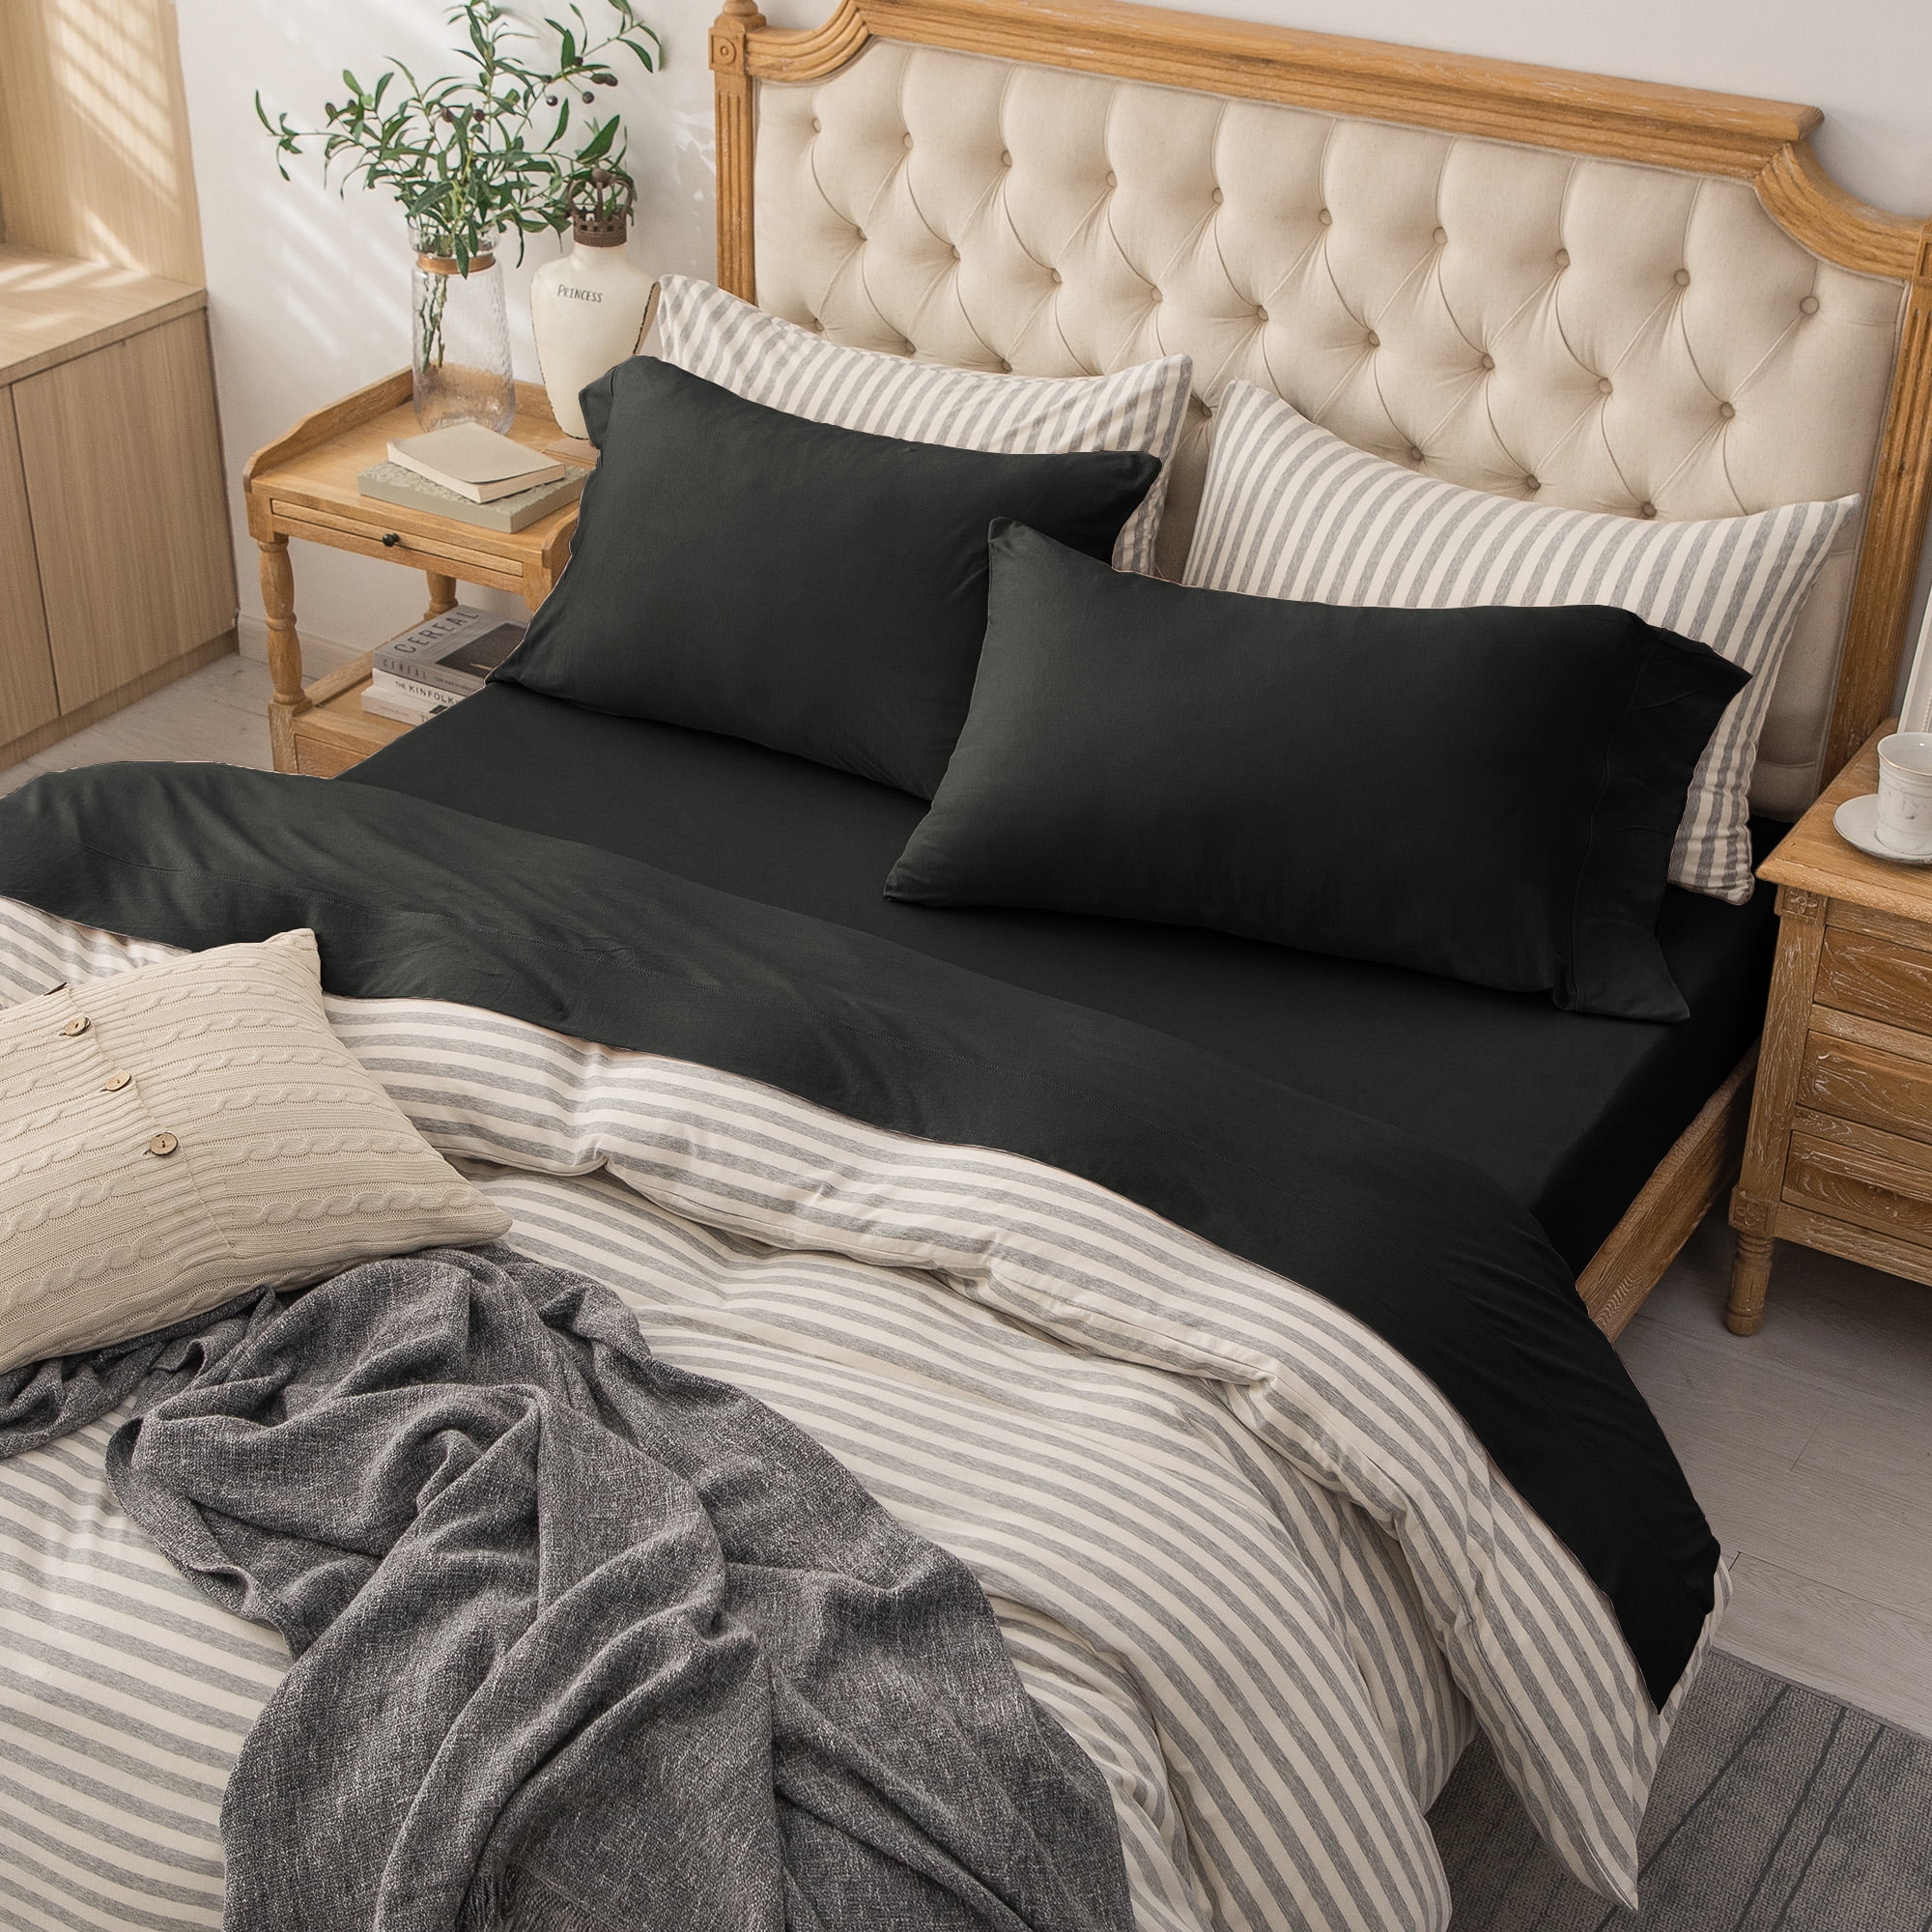 Utopia Bedding Bed Sheet Set - Jersey Knit Sheets 4 Piece Queen Jersey Sheet  Set – Cotton Jersey